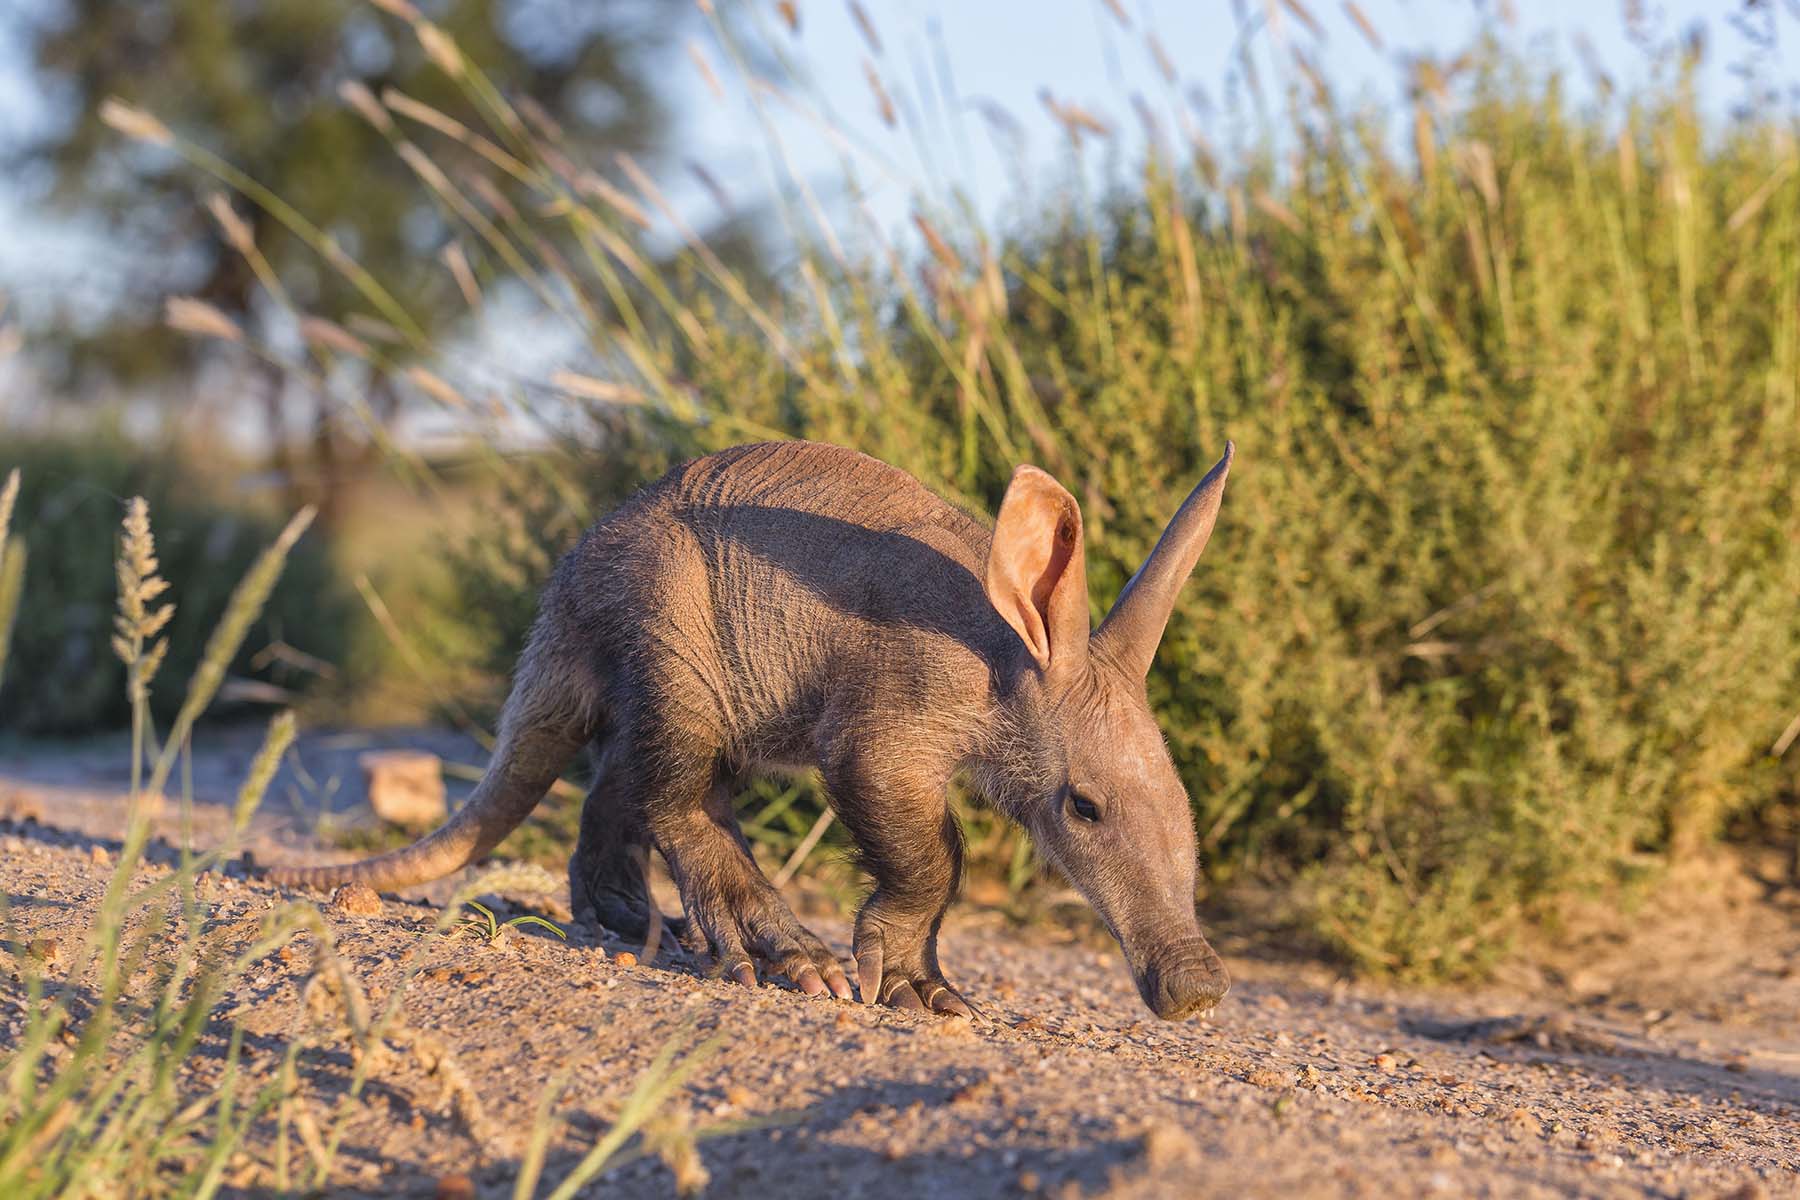 Young aardvark